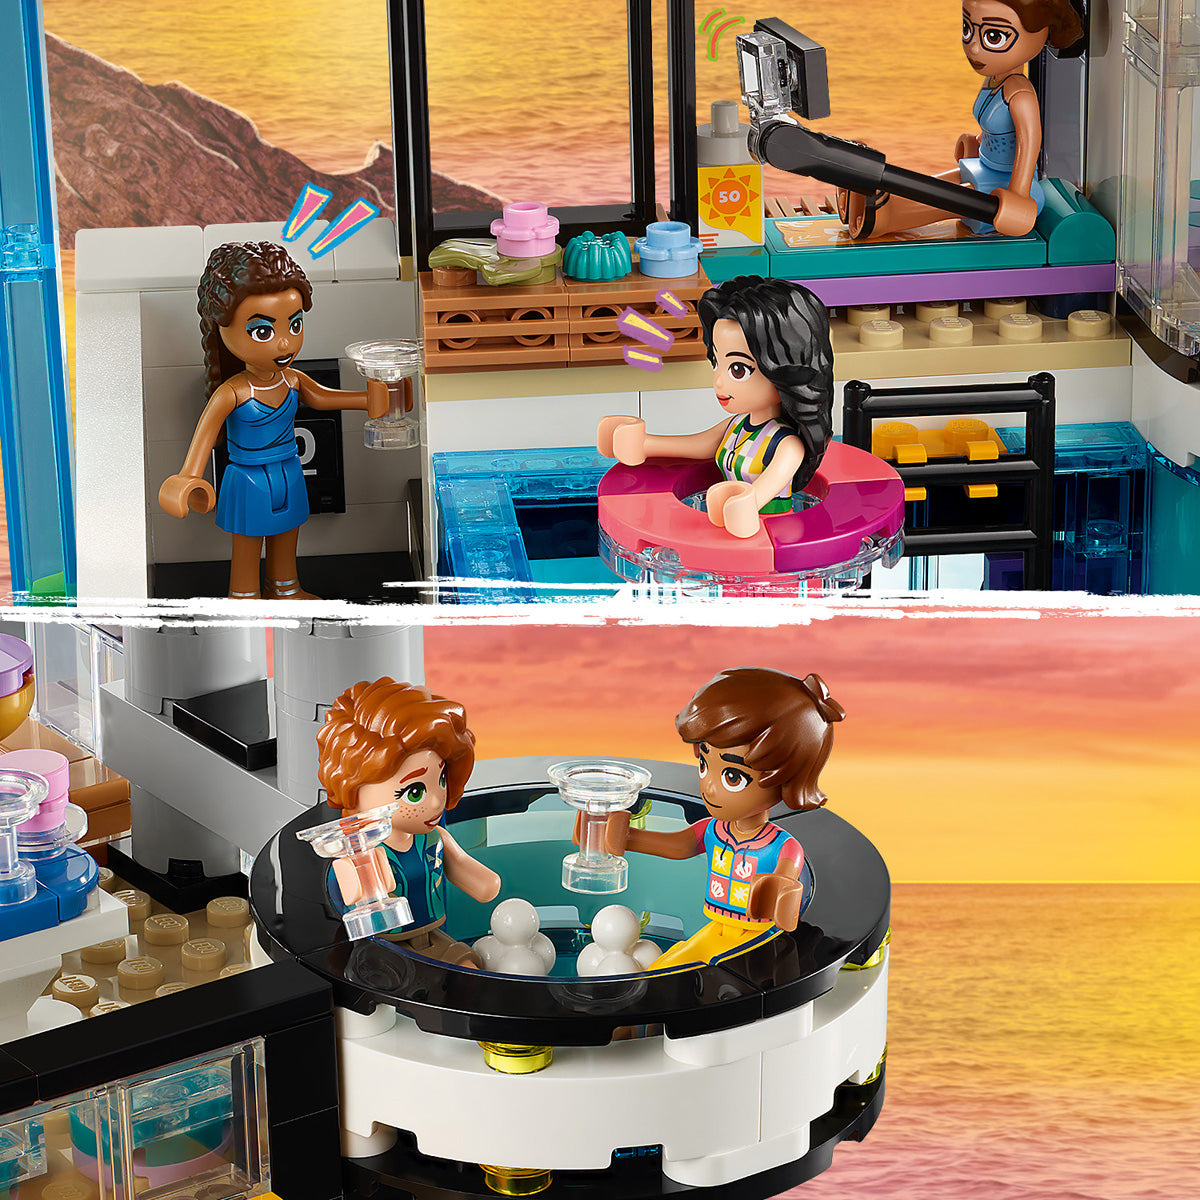 LEGO® Friends - Andrejina sodobna graščina (42639)